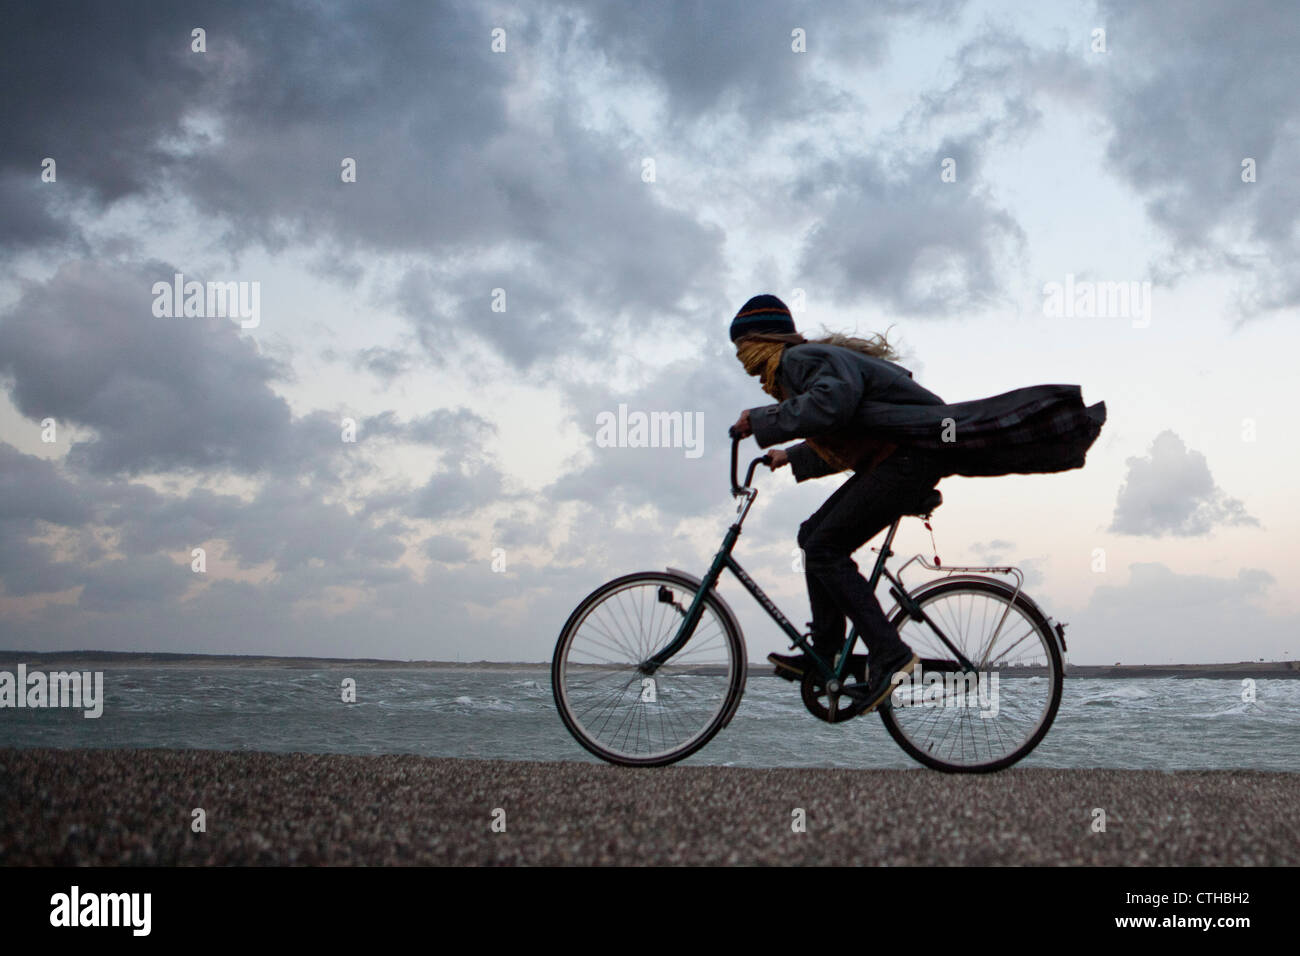 Les Pays-Bas, Kamperland, femme cyclisme contre la tempête. Banque D'Images